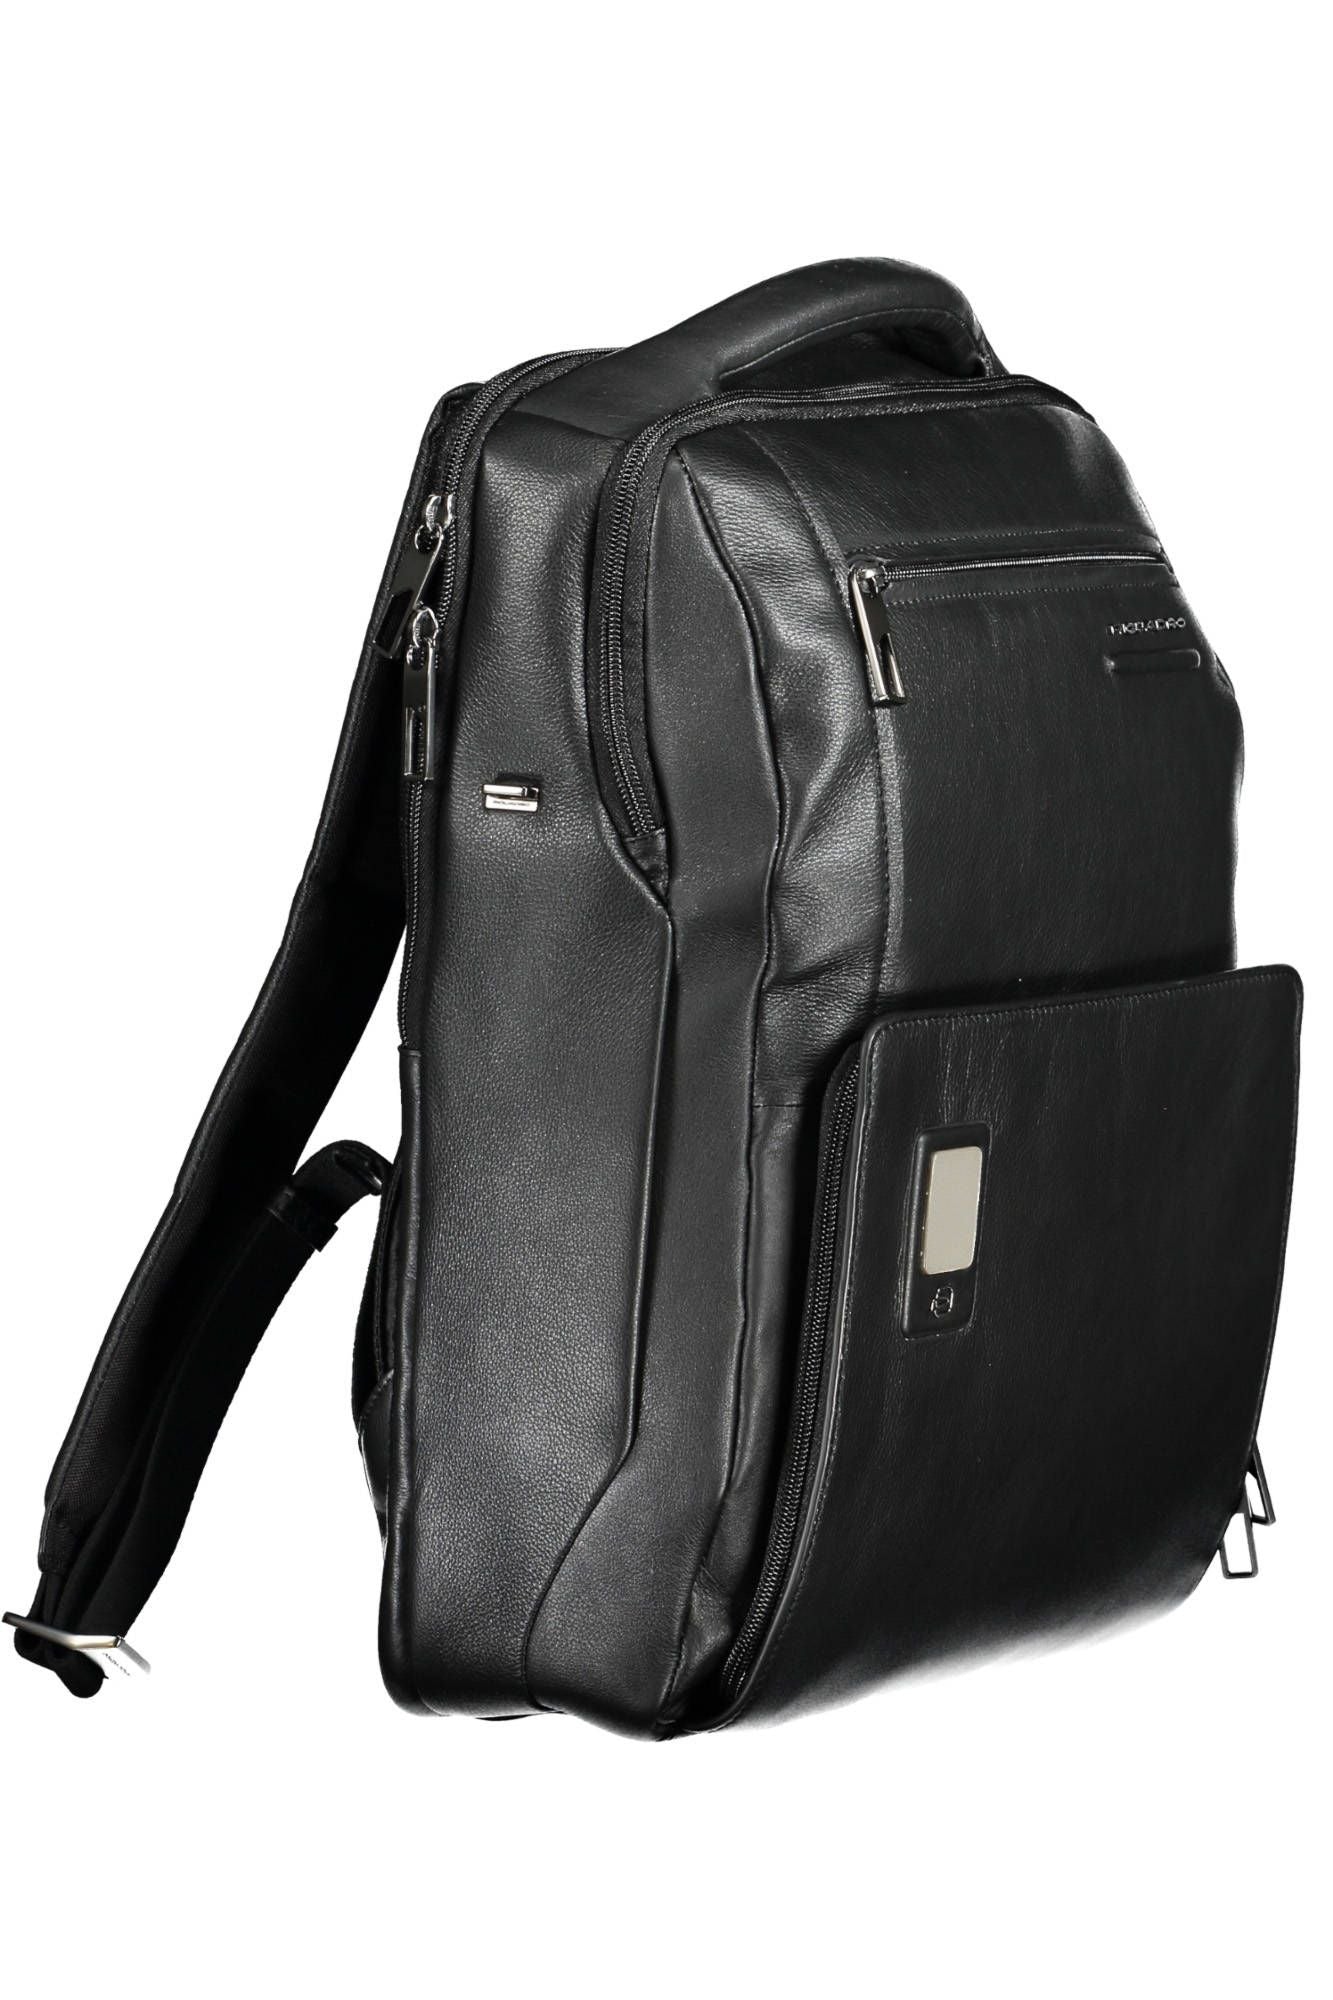 Elegant Black Leather Backpack with Laptop Pocket